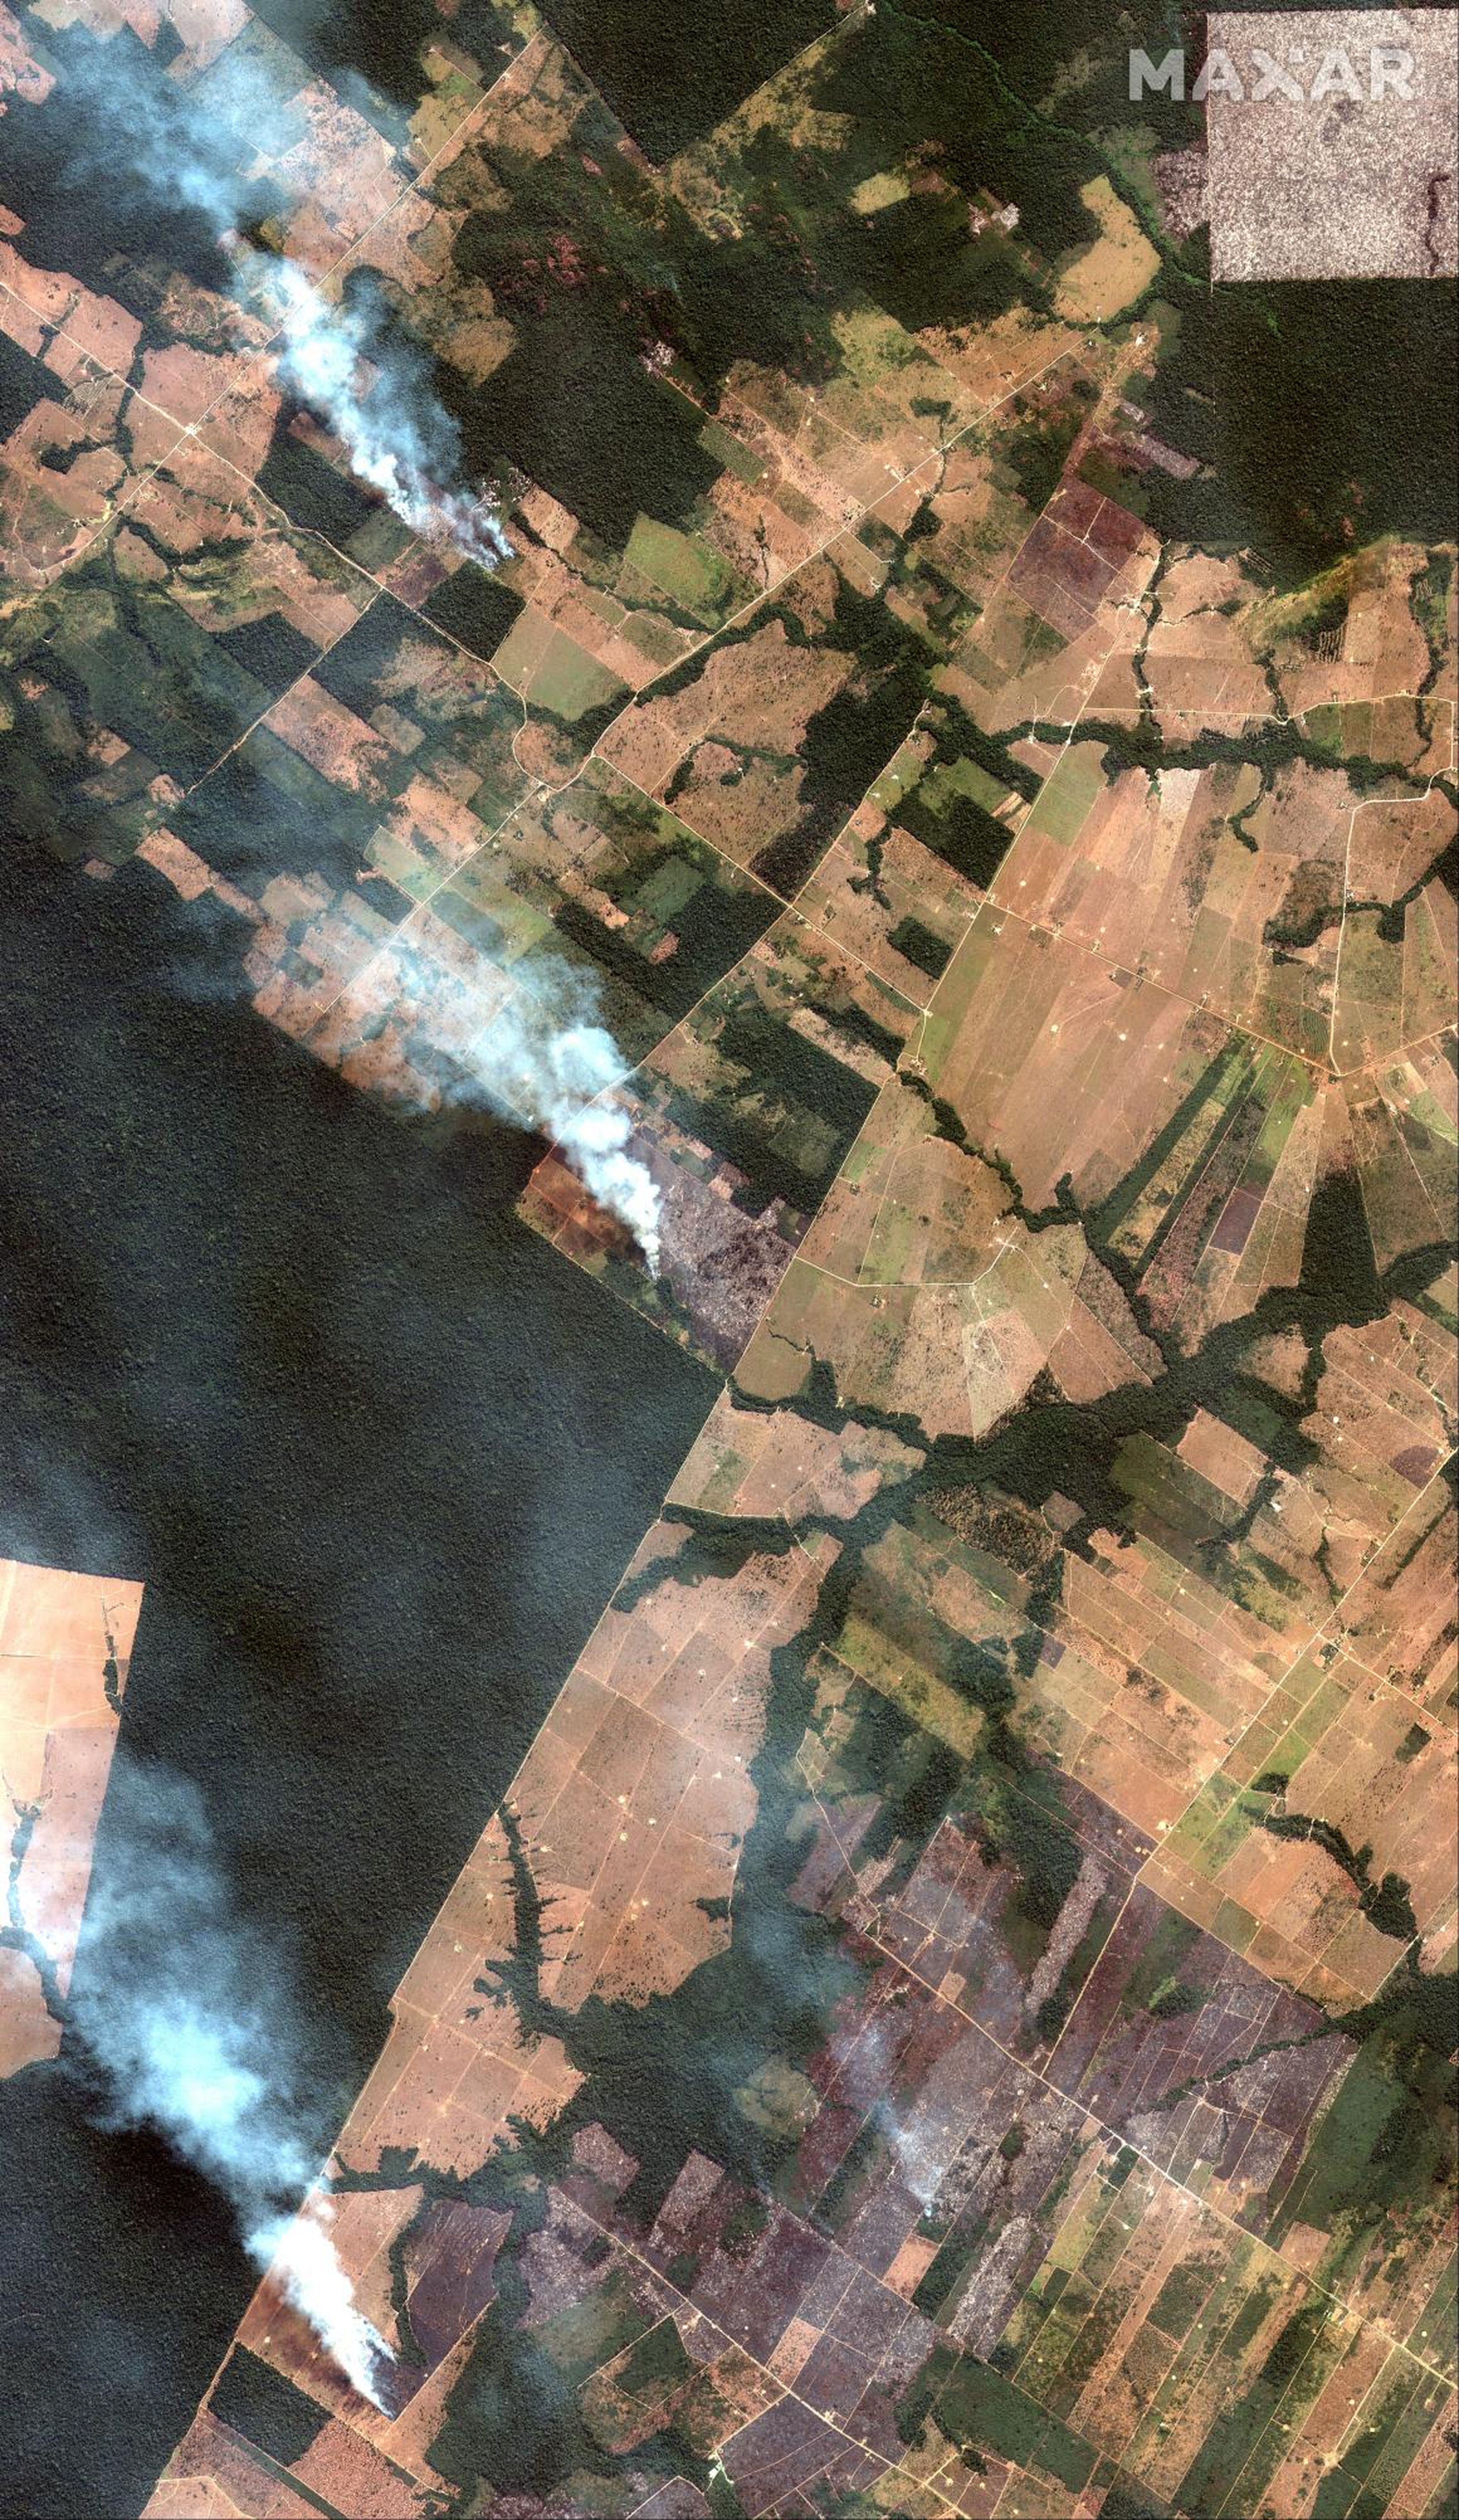 Captura de imágenes satelitales de tres incendios en el Amazonas al suroeste de Port Velho, Brasil, el 15 de agosto de 2019.